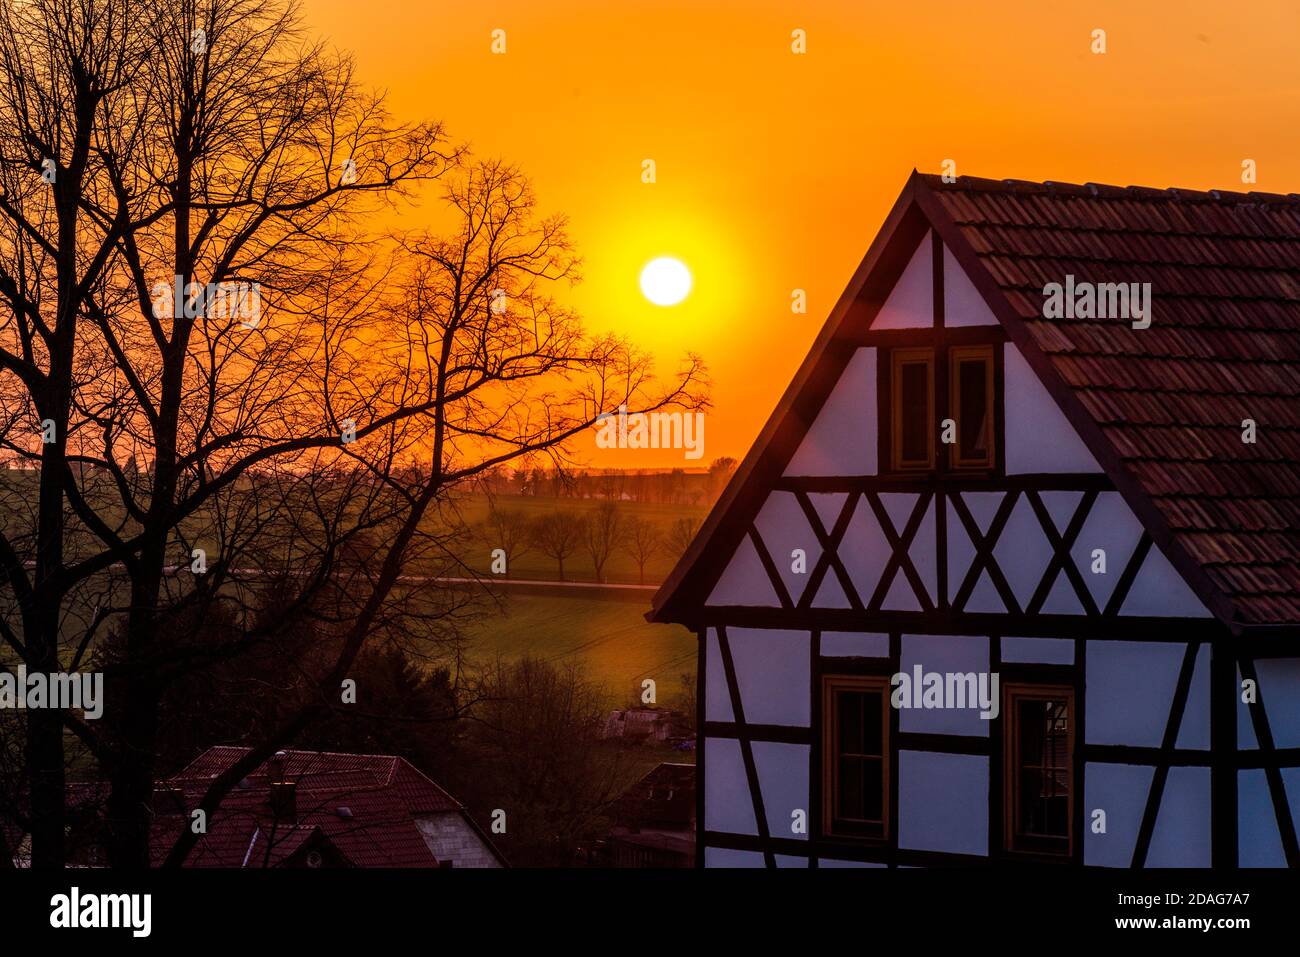 Fachwerkhaus, mittelsächsisches Dorf, Sonnenuntergang im Frühjahr/März Stock Photo